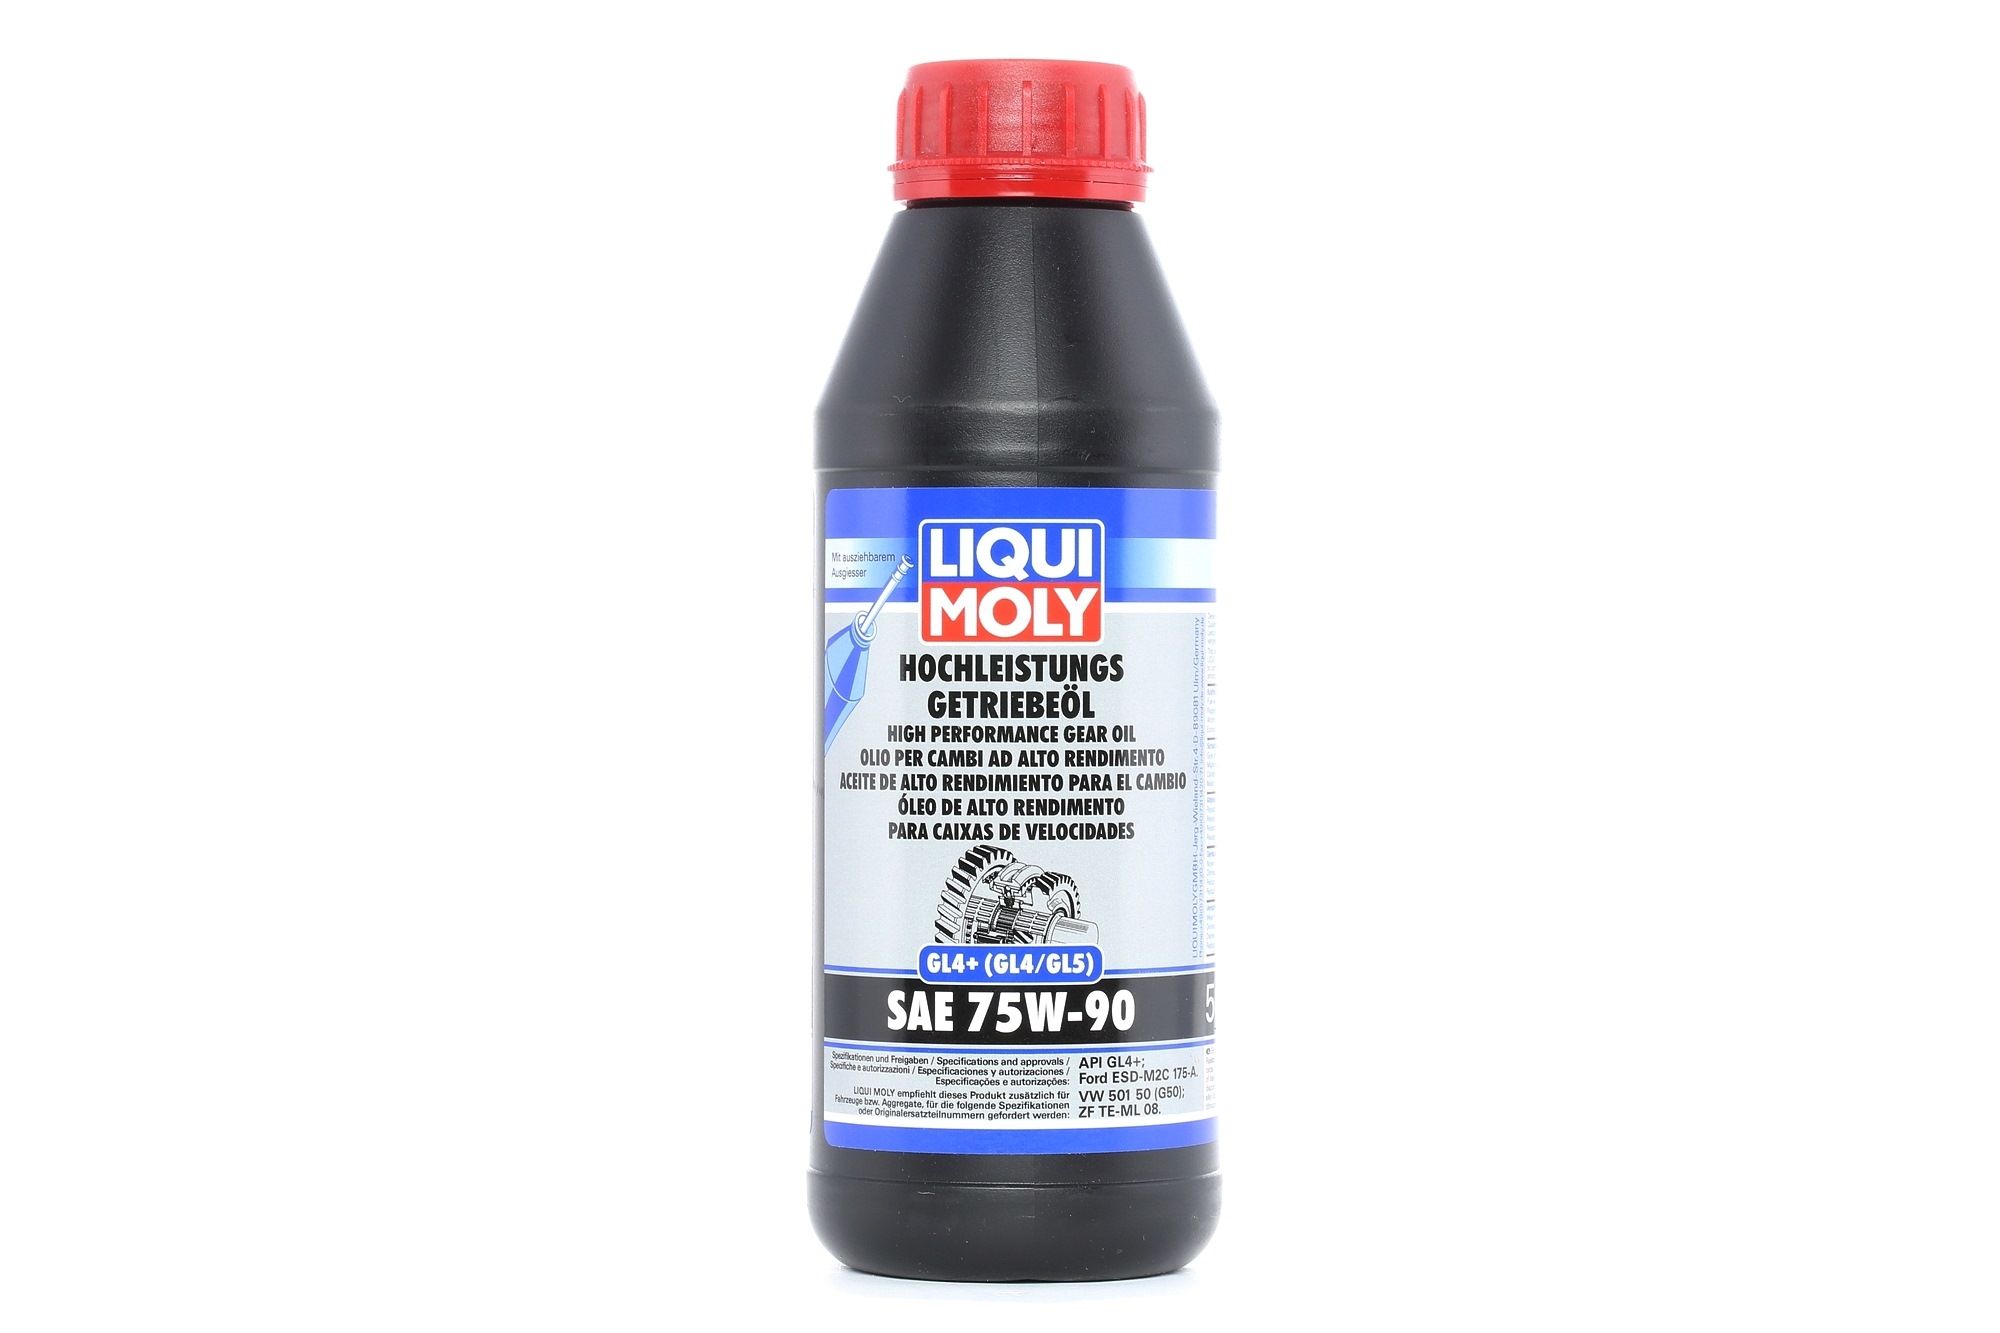 Ciclomotore Oli e Liquidi pezzi di ricambio: Olio cambio manuale LIQUI MOLY Hochleistungs GL4+ 4433